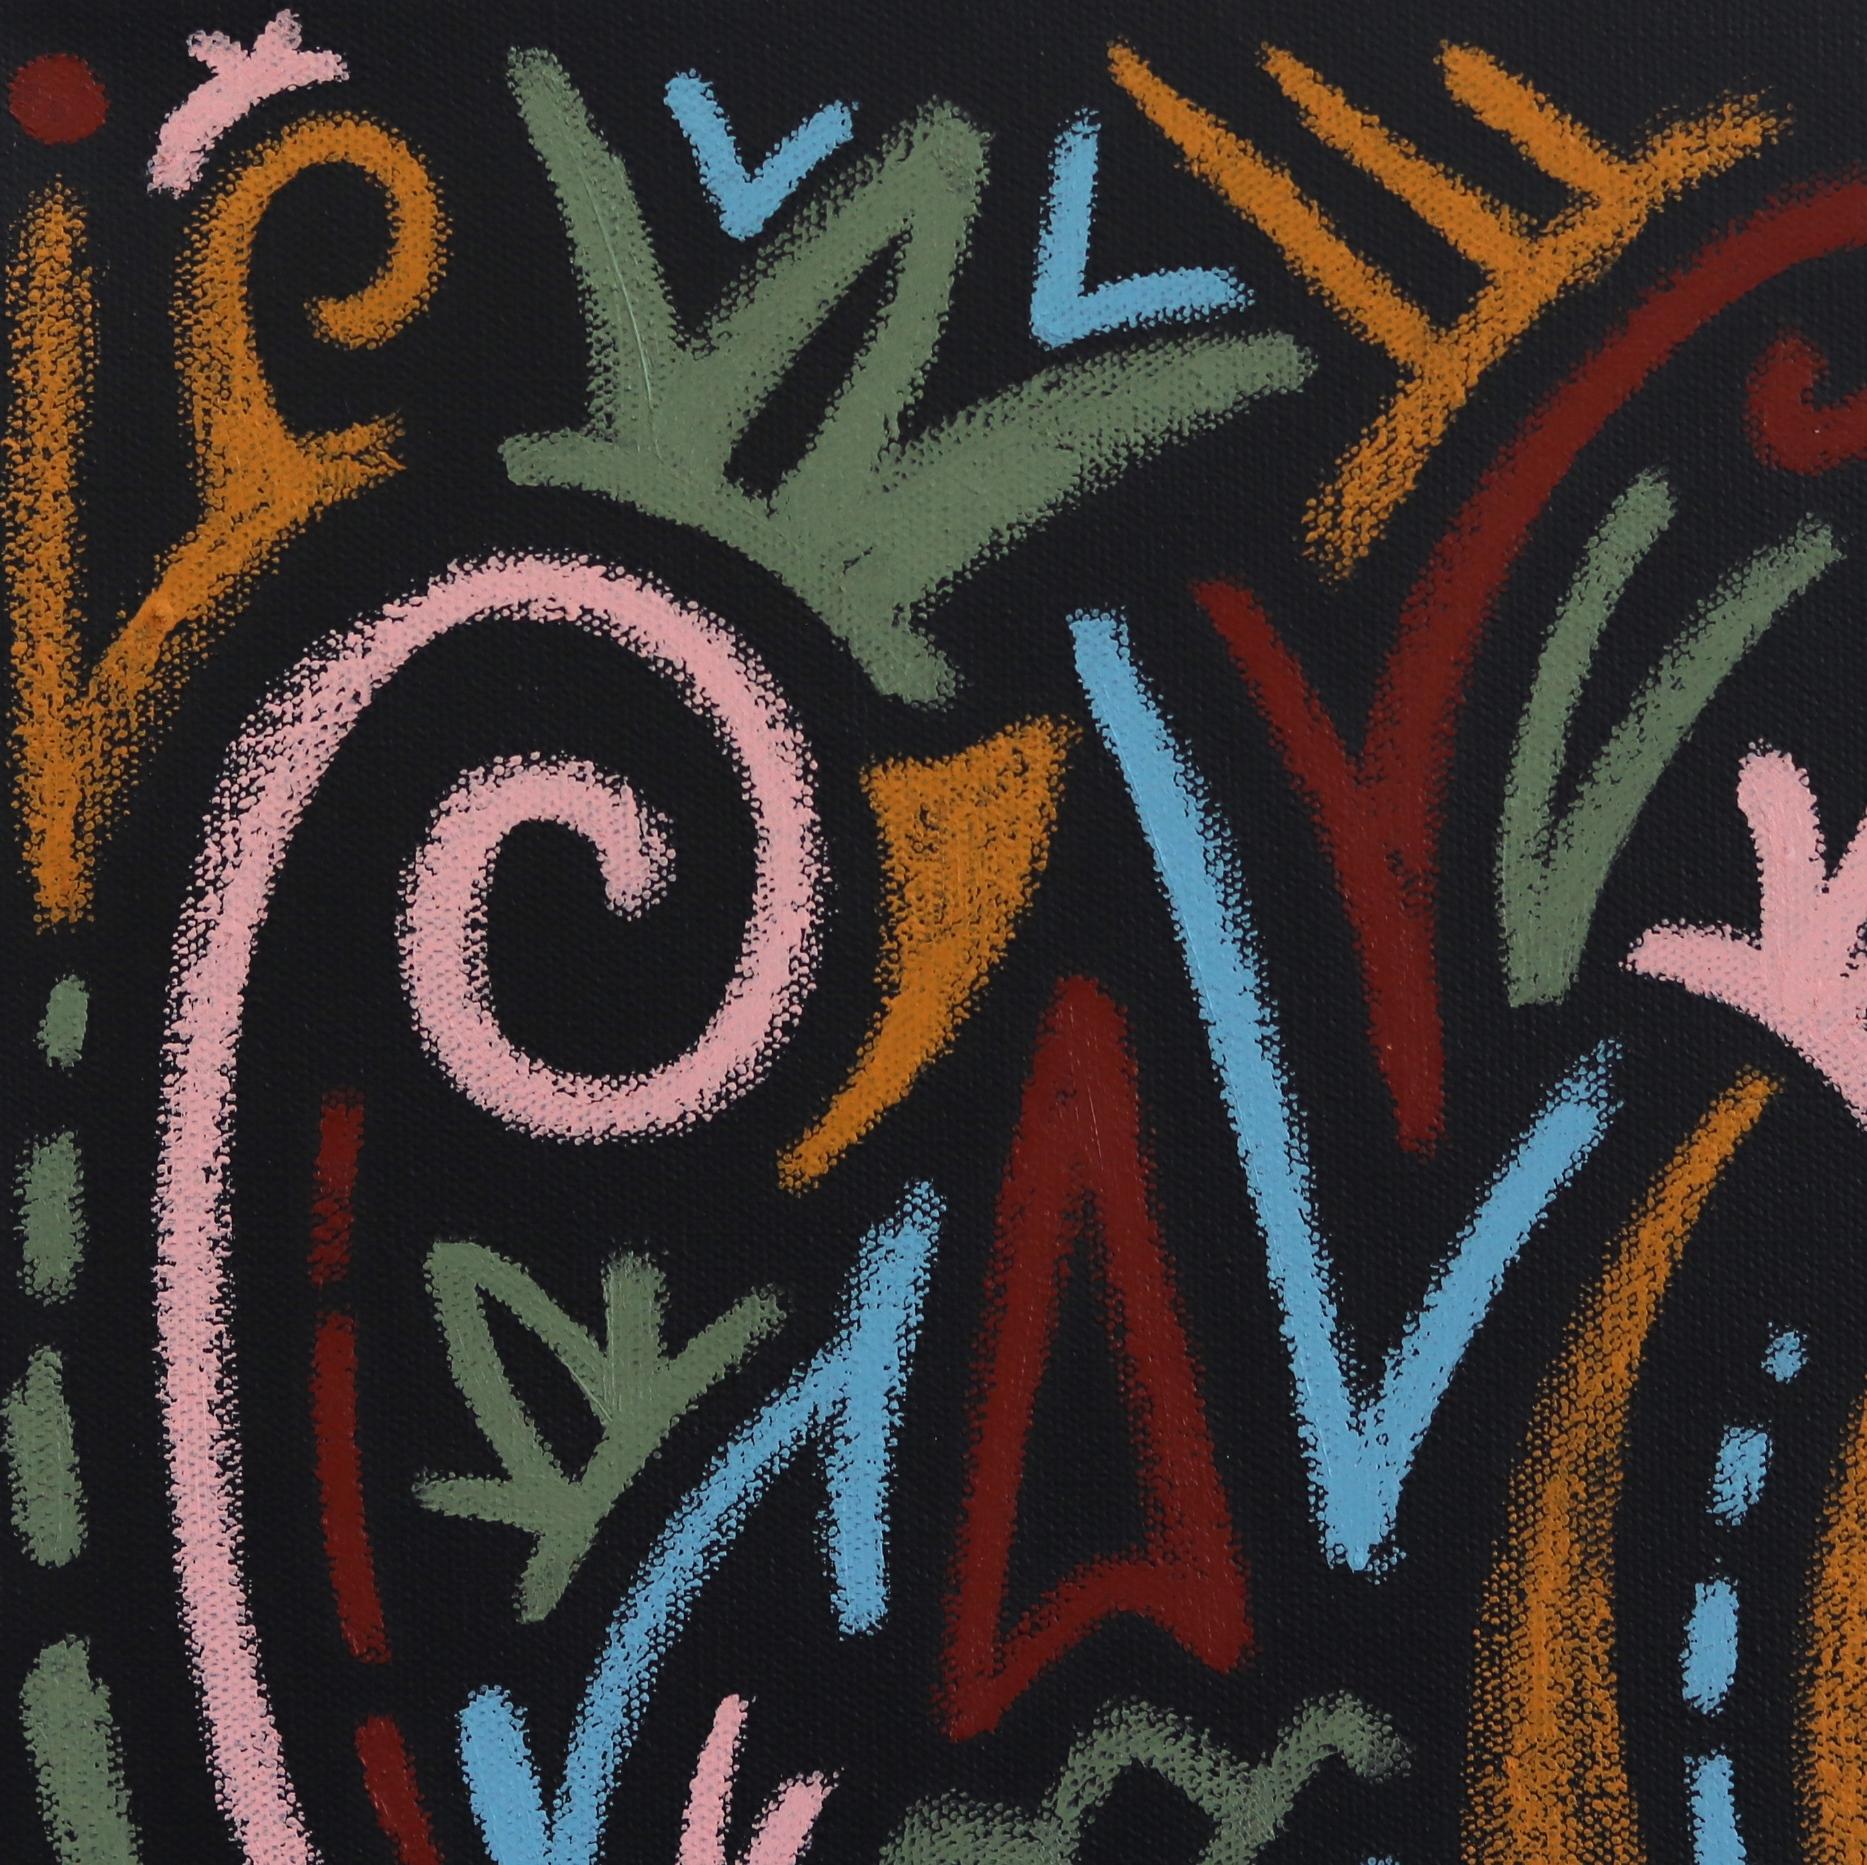 Ilan Leas verwendet graffitiähnliche Striche und kühne Winkel, die in seinen Zeichnungen zu einem faszinierenden Gleichgewicht des organisierten Chaos zusammenlaufen. Seine dynamischen linearen Designkompositionen sind von den Ureinwohnern